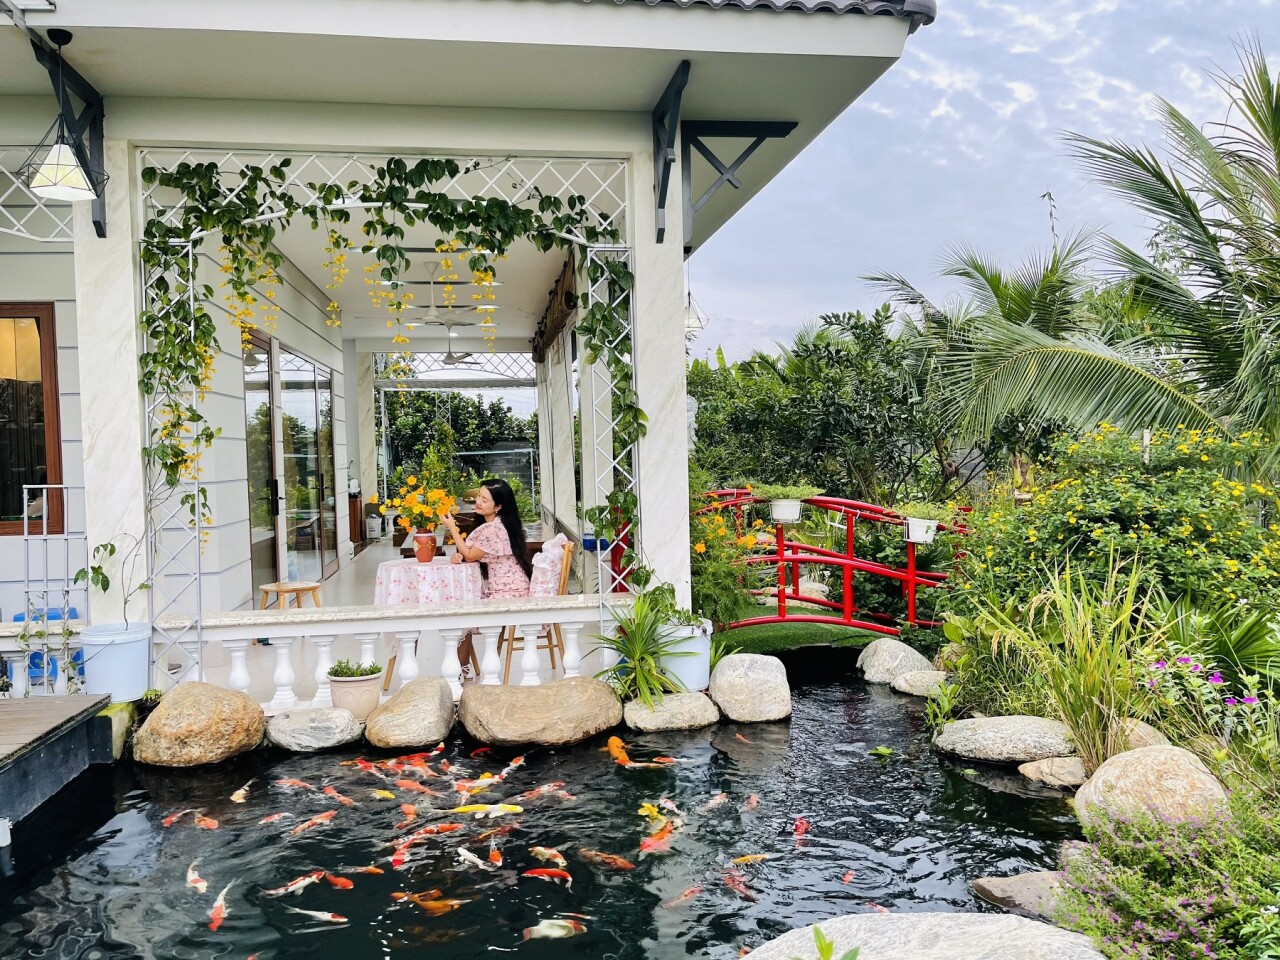 Nhà vườn ở Đồng Nai đẹp như resort, là món quà chồng tặng vợ nhân kỷ niệm 10 năm ngày cưới